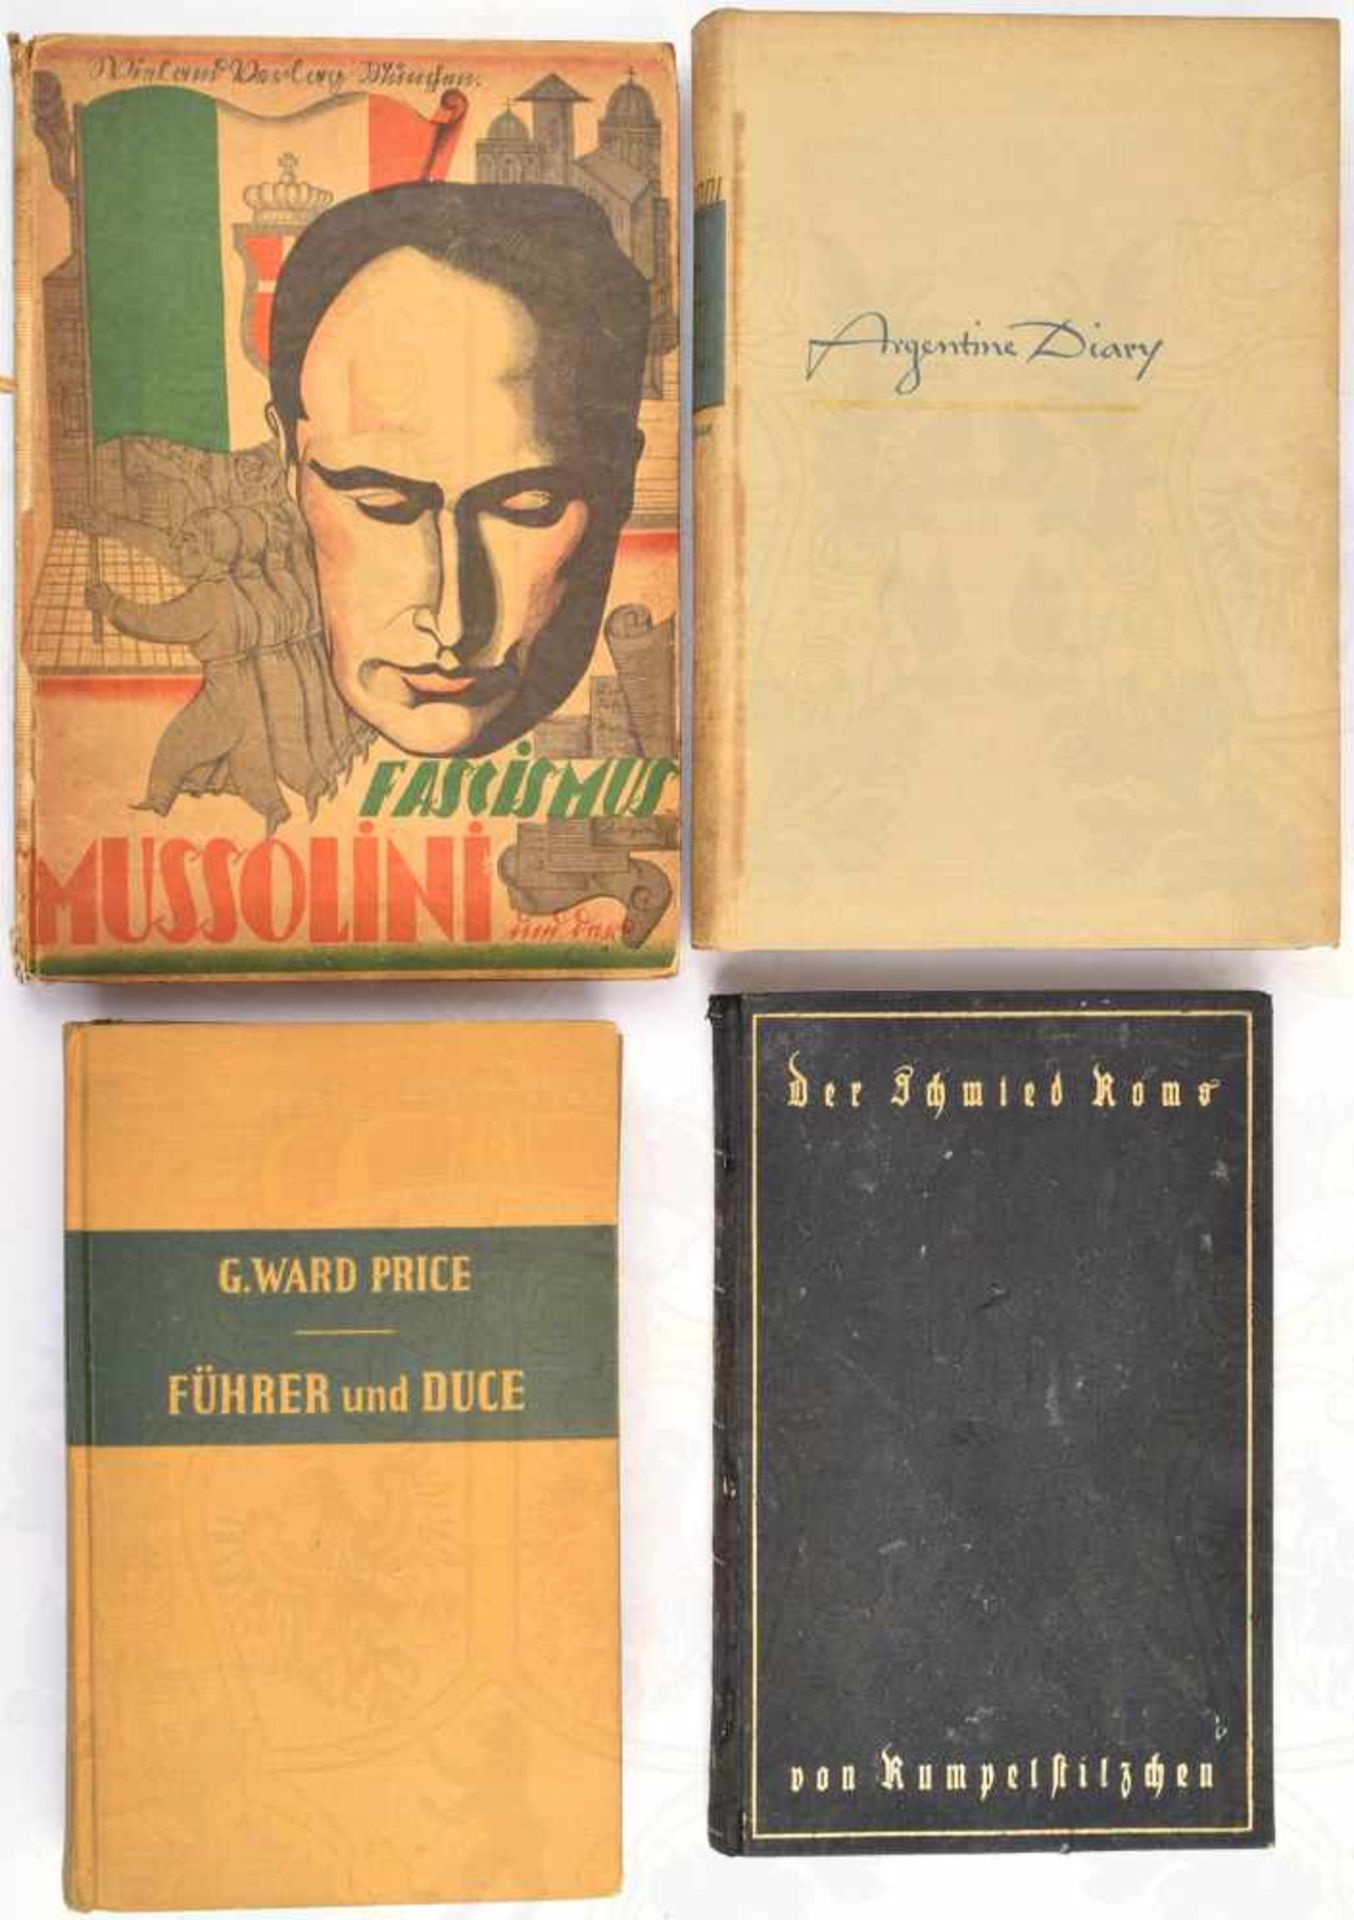 4 TITEL FASCHISMUS, Argentine Diary (engl. Text); Führer und Duce; Mussolini u. der Fascismus; Der